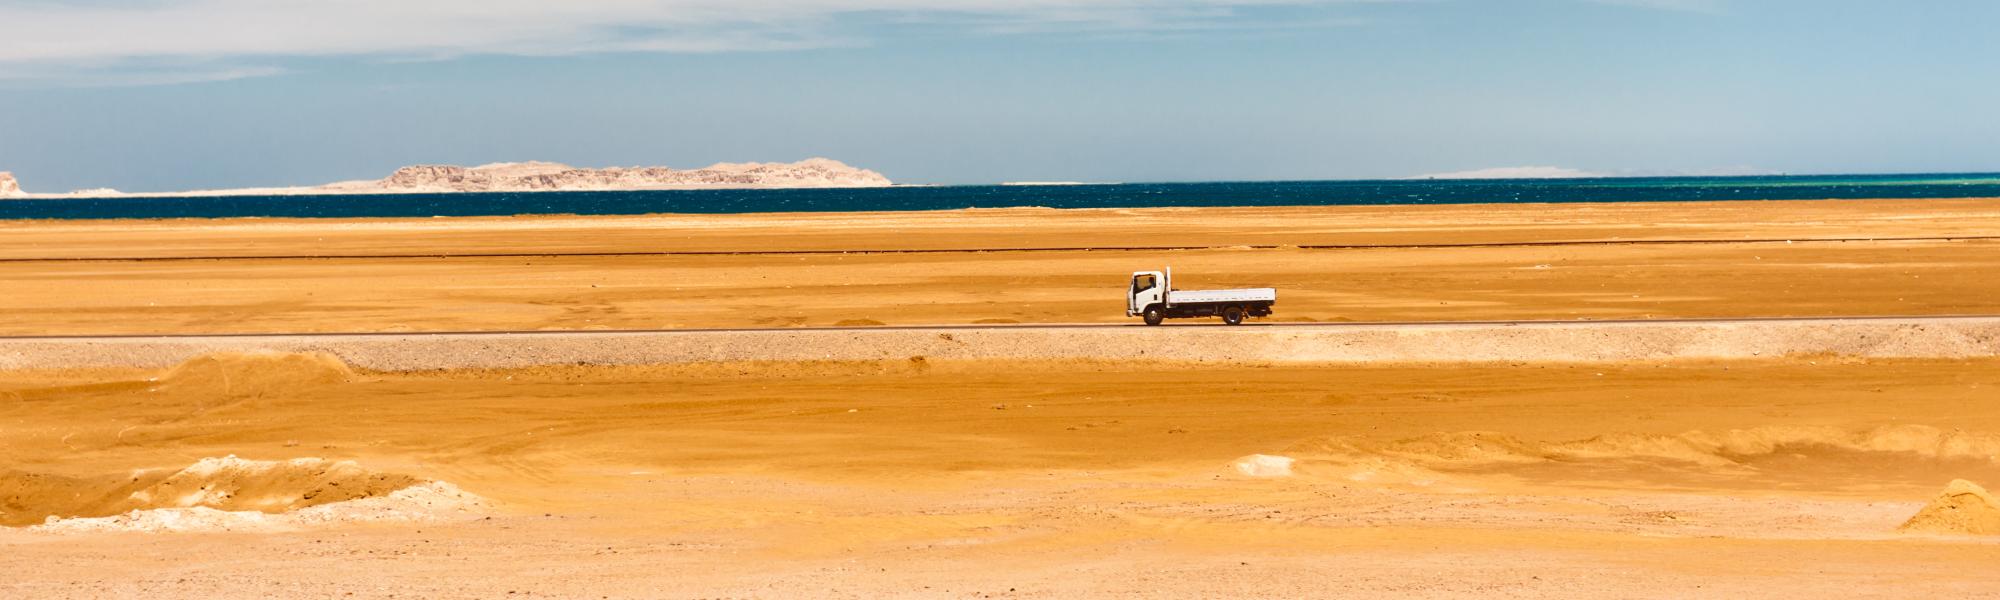 truck in desert